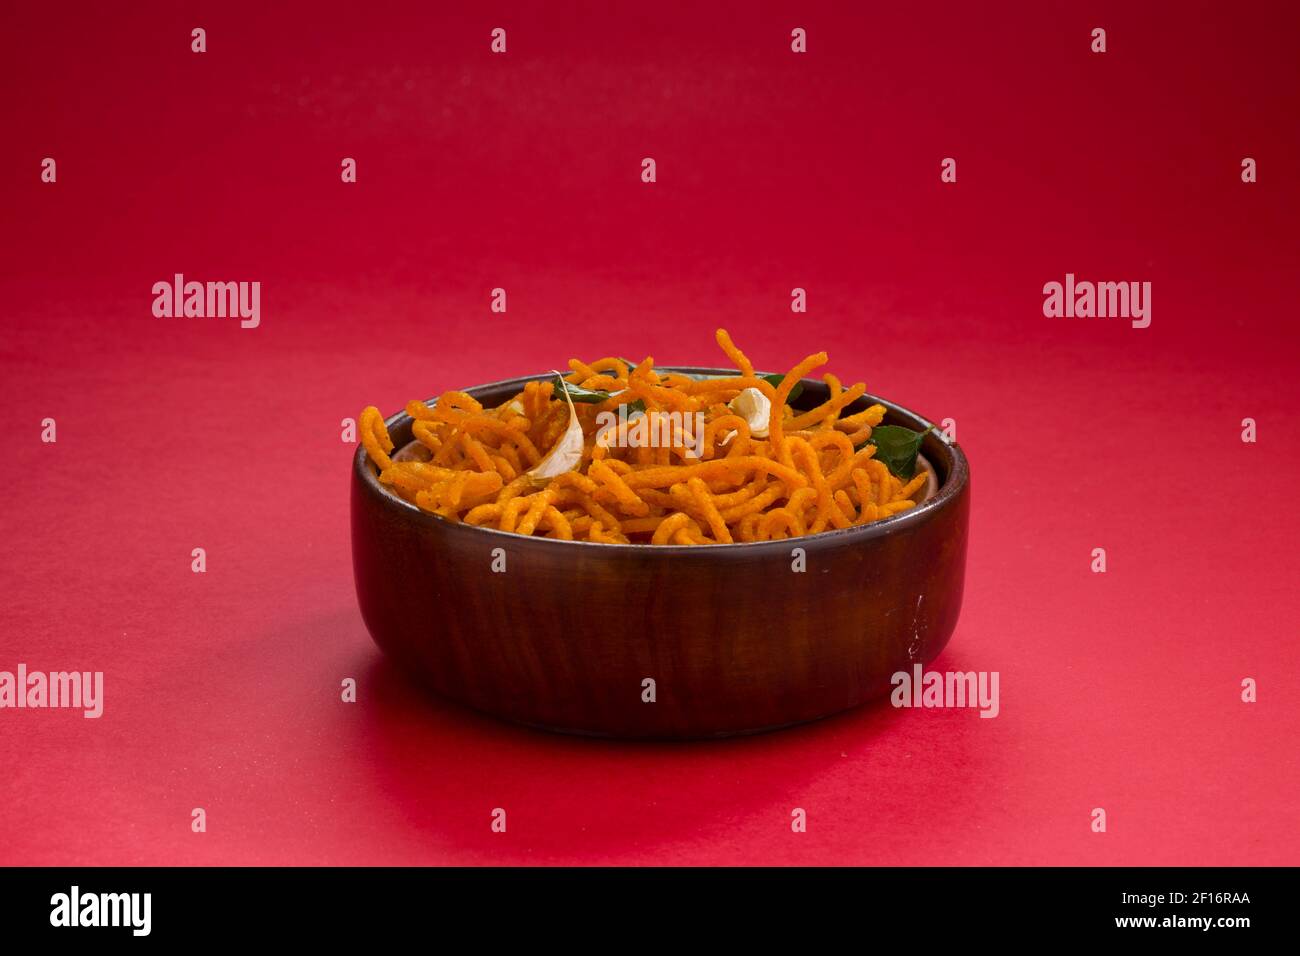 En-cas indiens Besan sev ou Namkeen sev garni de feuilles de curry frites et de gousses d'ail dans un bol en bois à fond texturé rouge. Banque D'Images